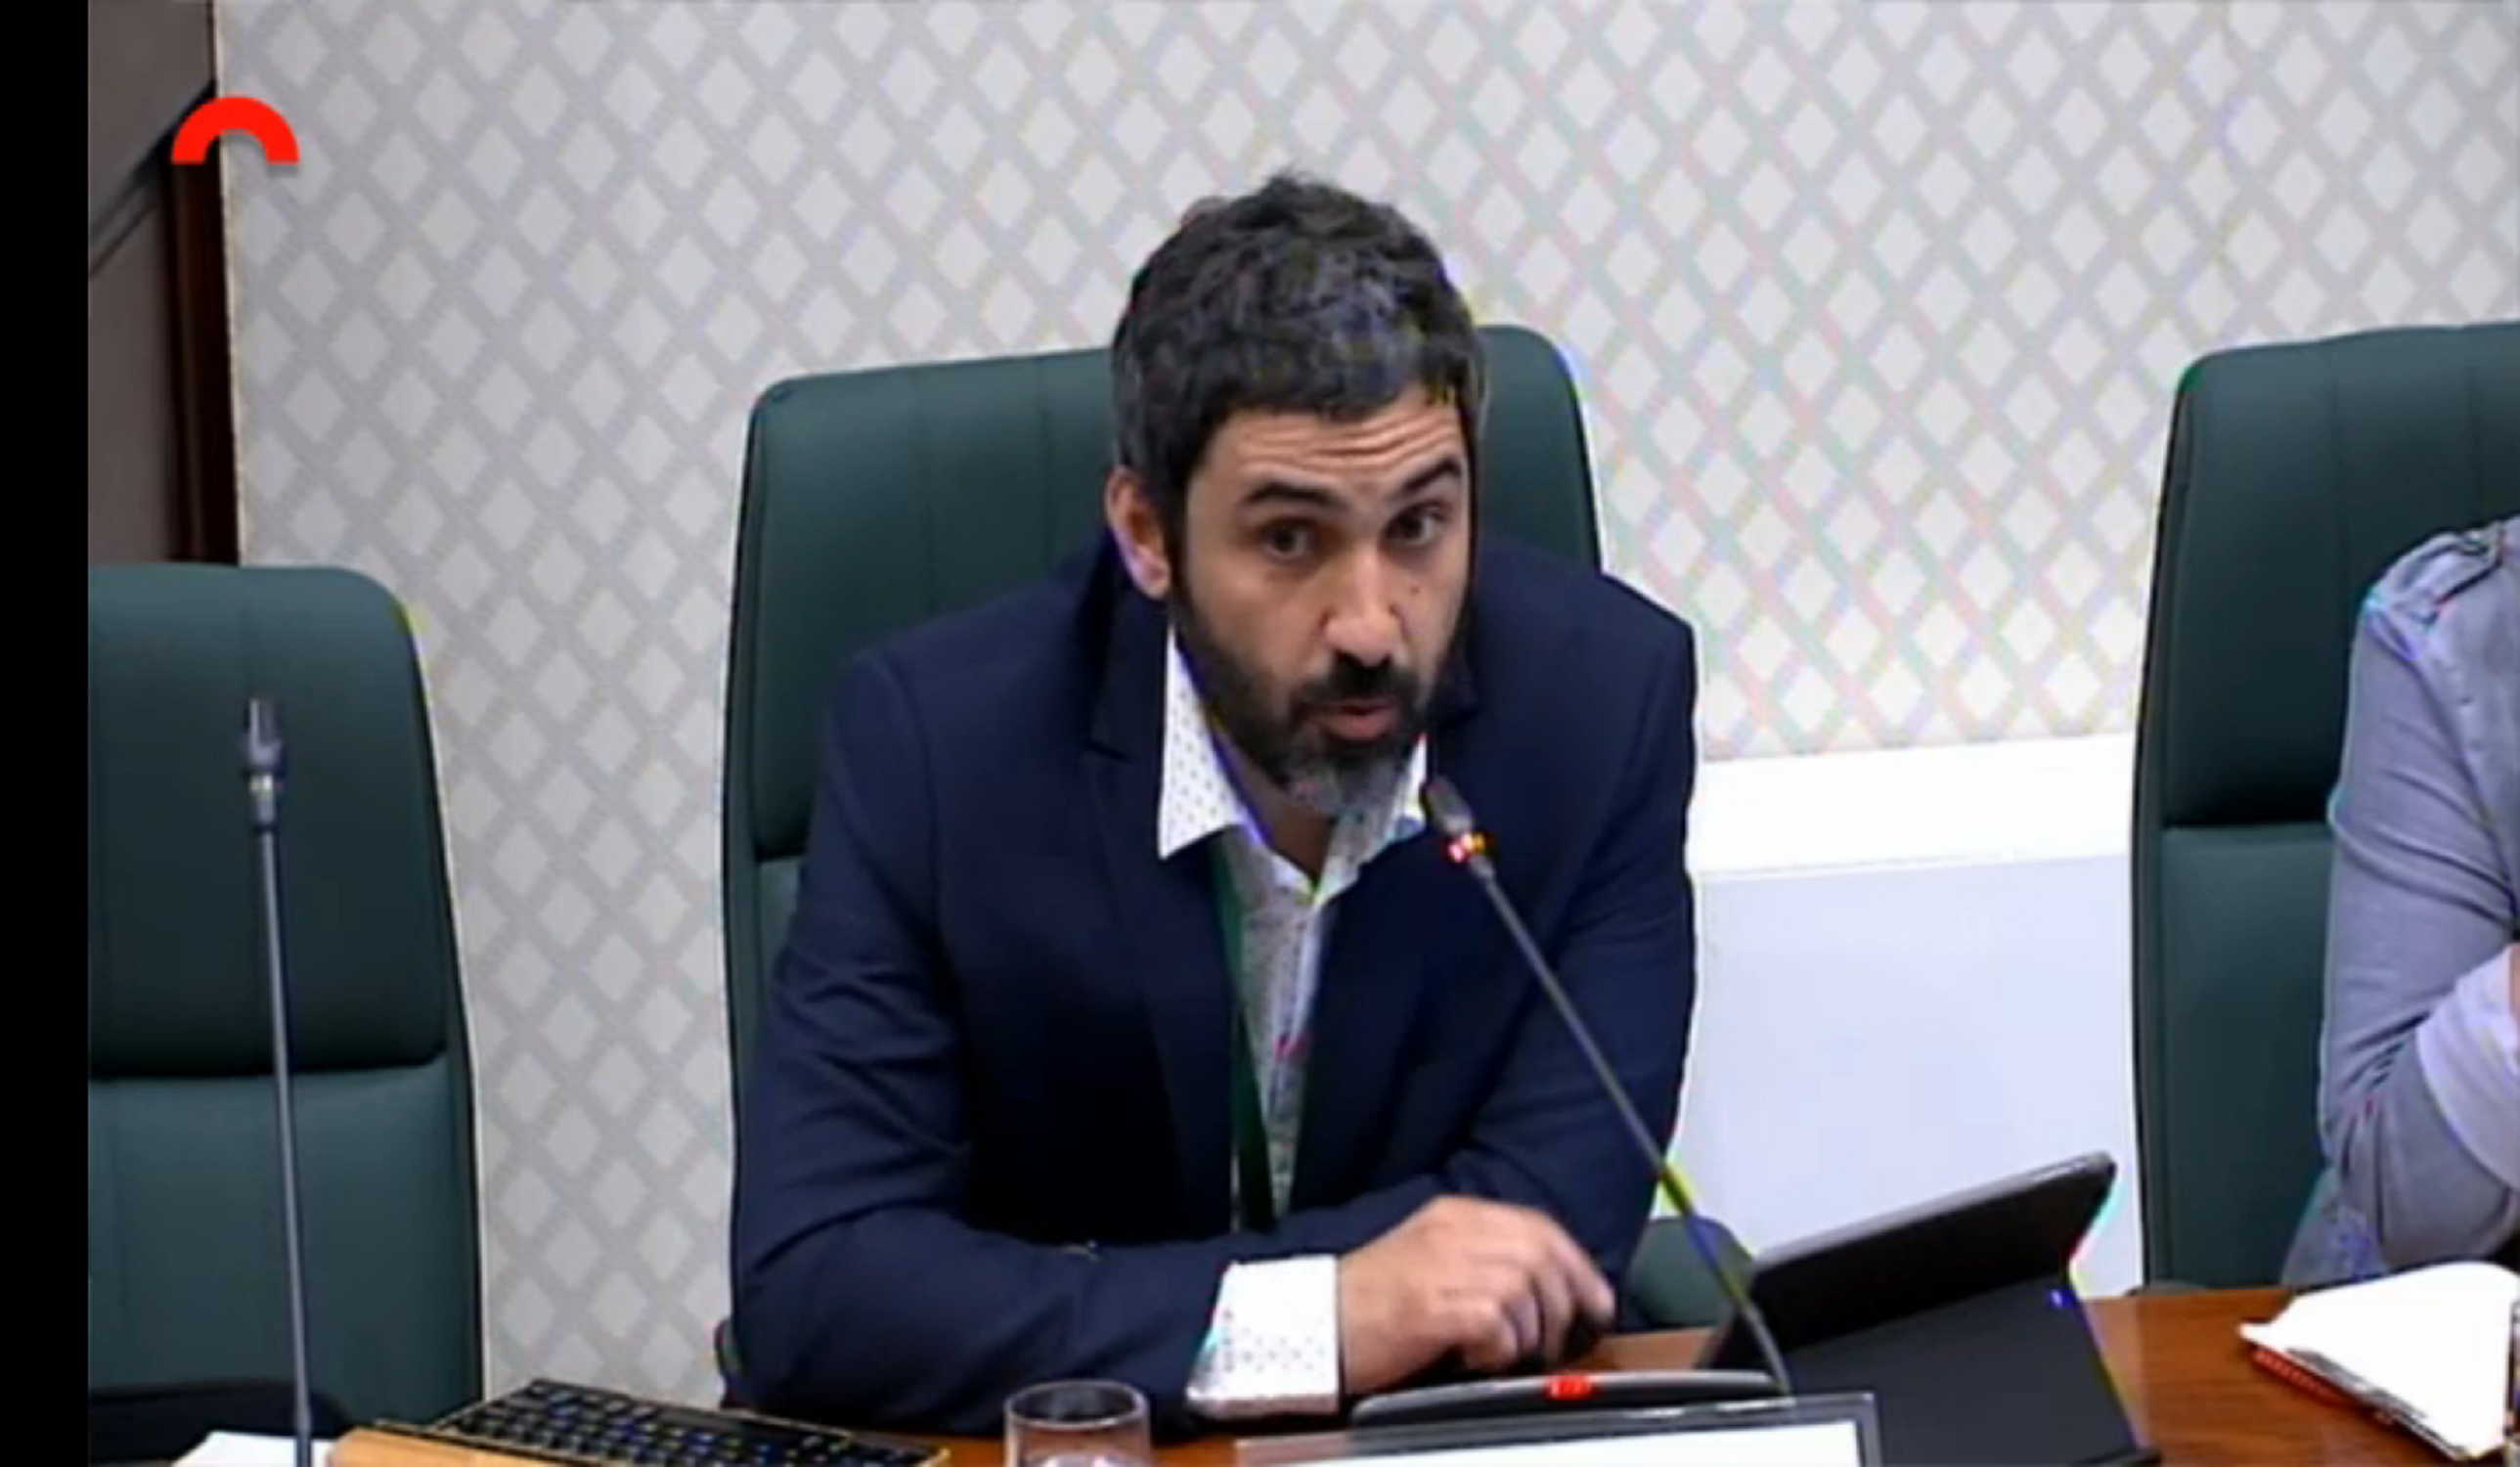 El periodista Pedro Águeda sitúa a Eugenio Pino como "el artífice" de la Operación Catalunya